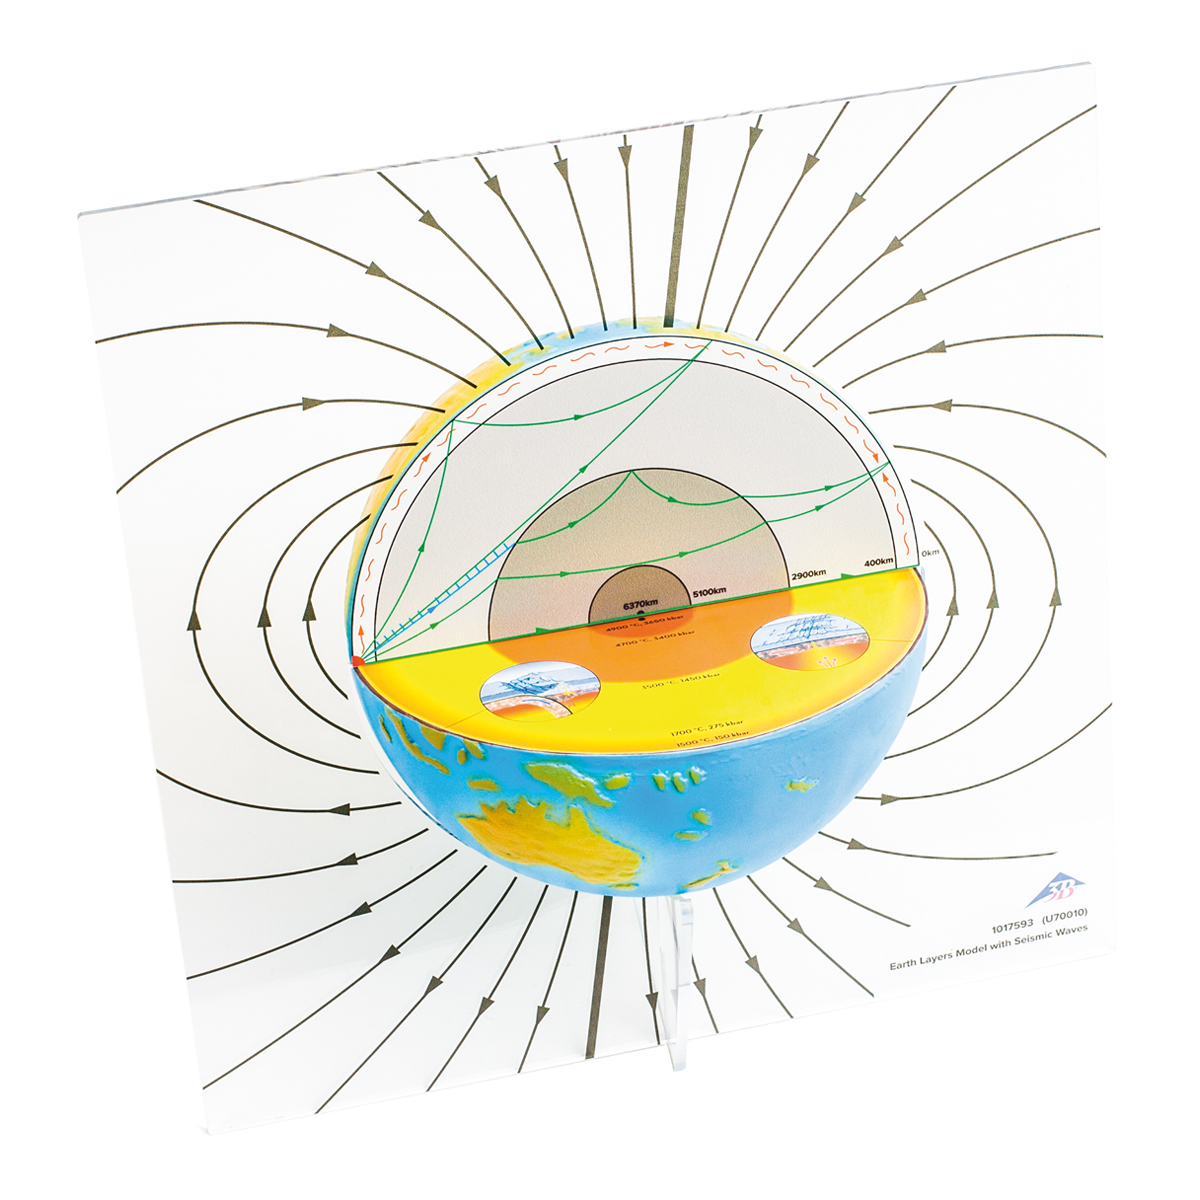 Modelo de las capas de la Tierra con ondas sísmicas - 1017593 - U70010 -  Seismology - 3B Scientific